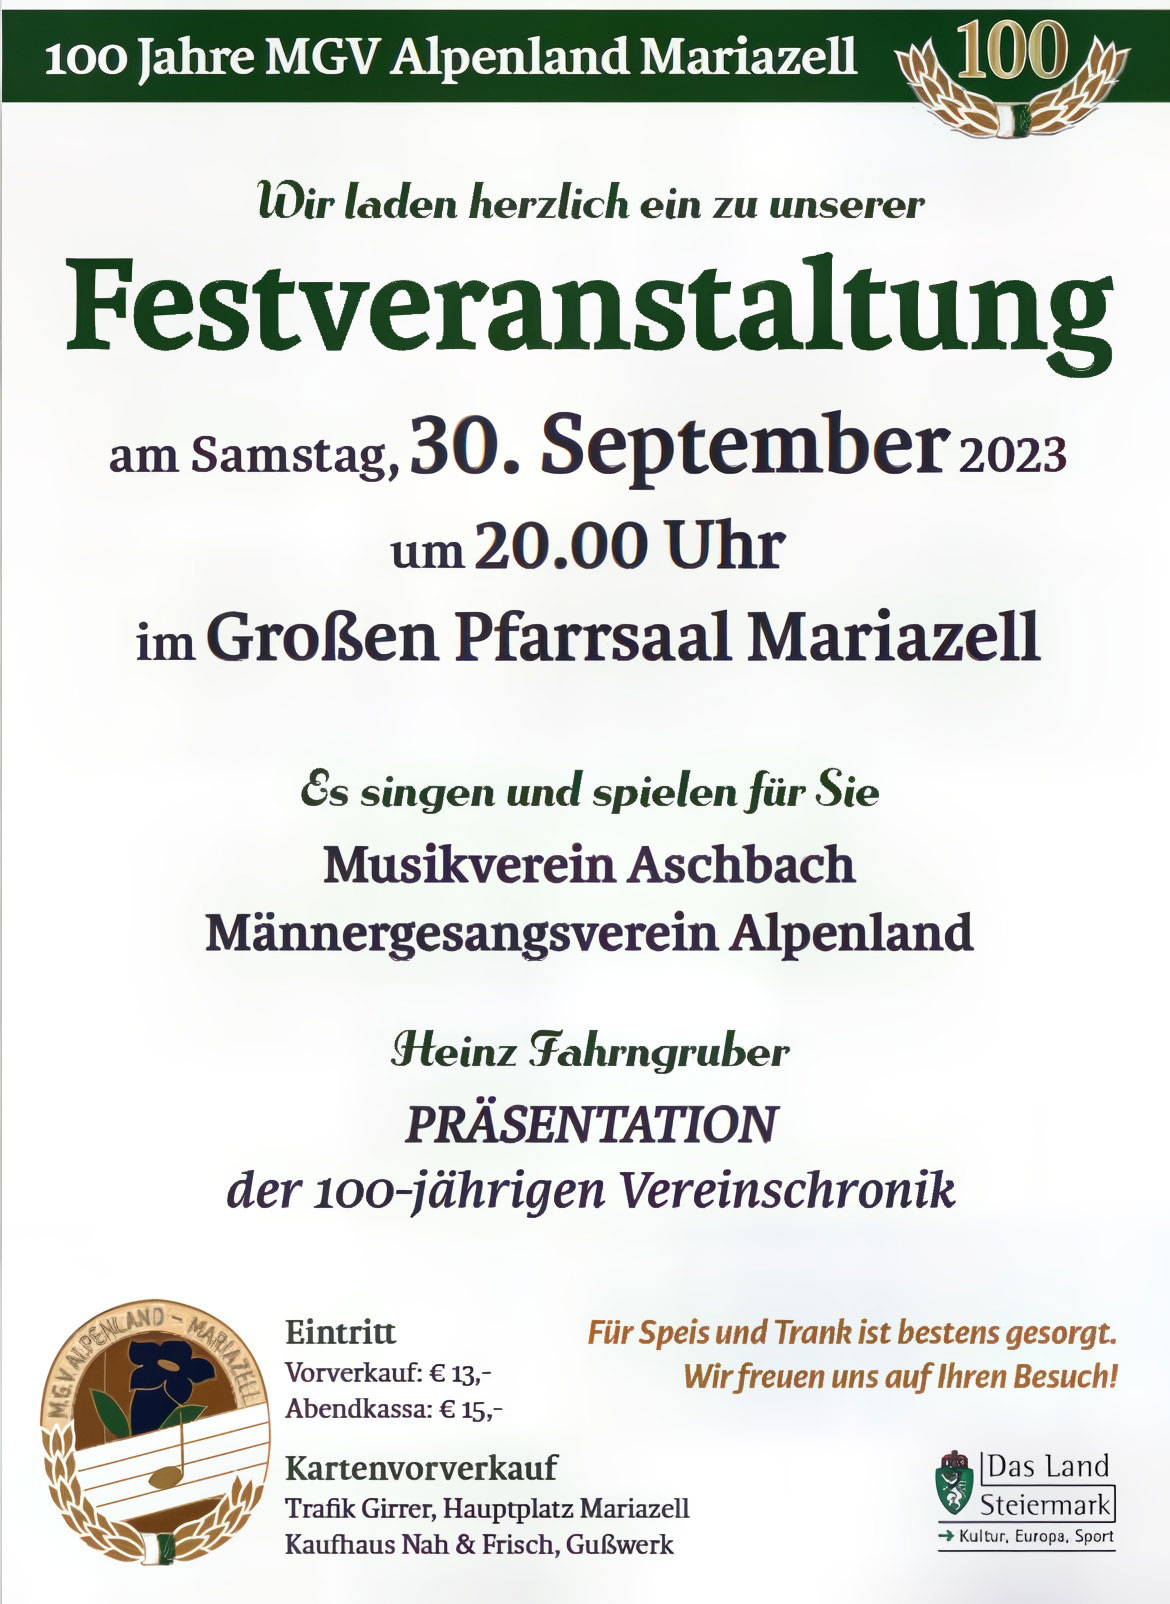 100 Jahre MGV Alpenland Mariazell Festveranstaltung